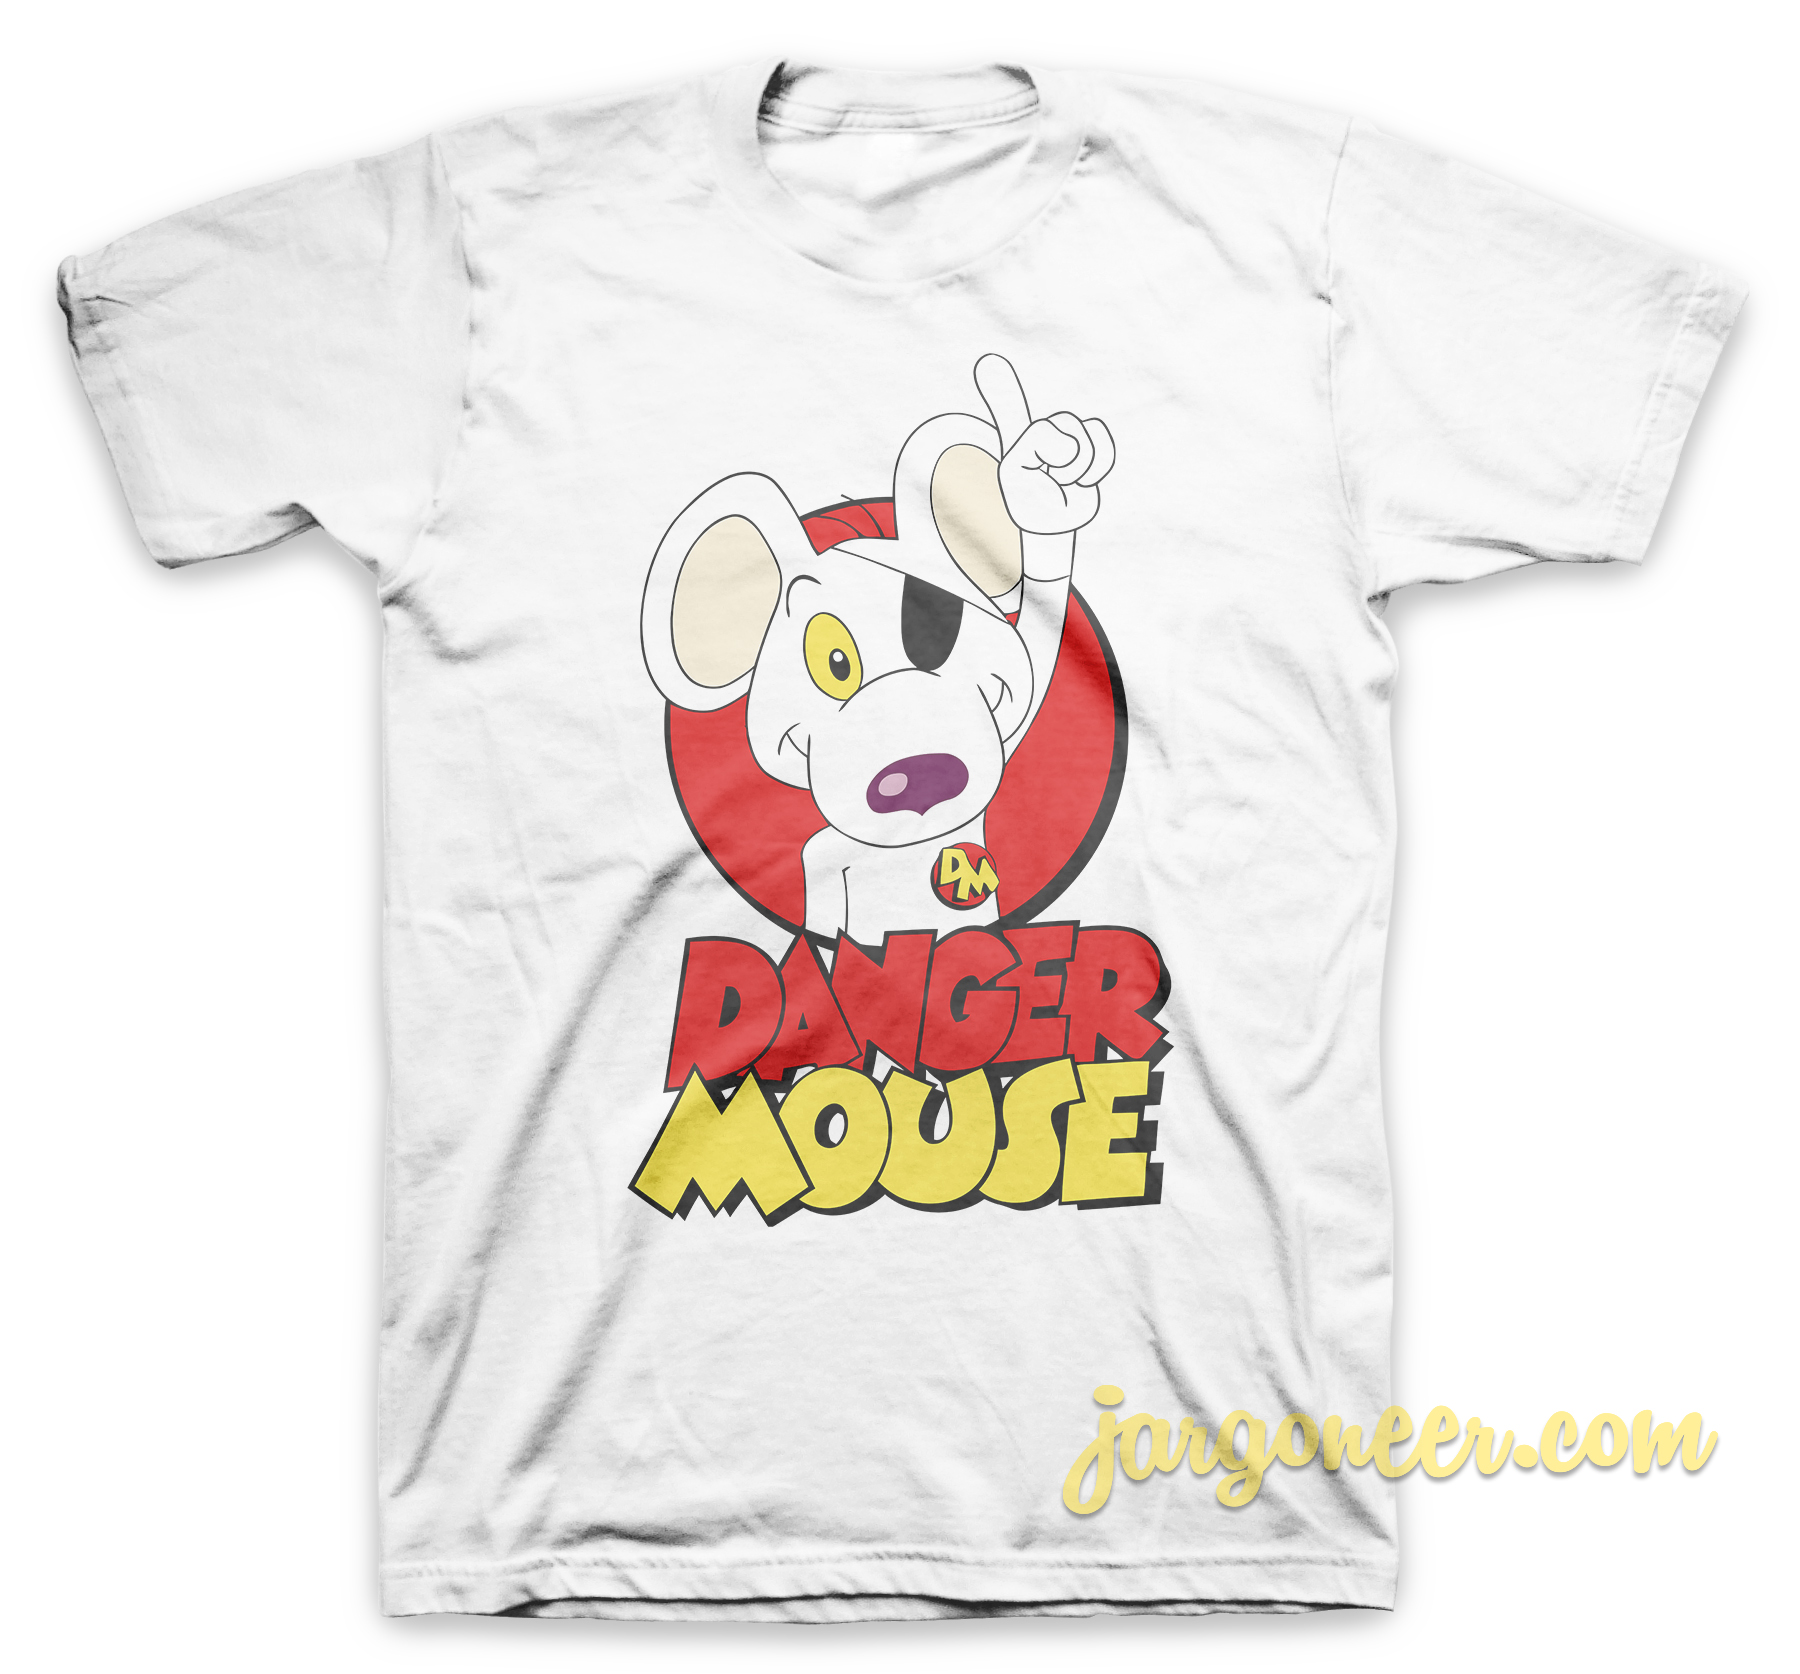 Danger Mouse White T Shirt - Shop Unique Graphic Cool Shirt Designs